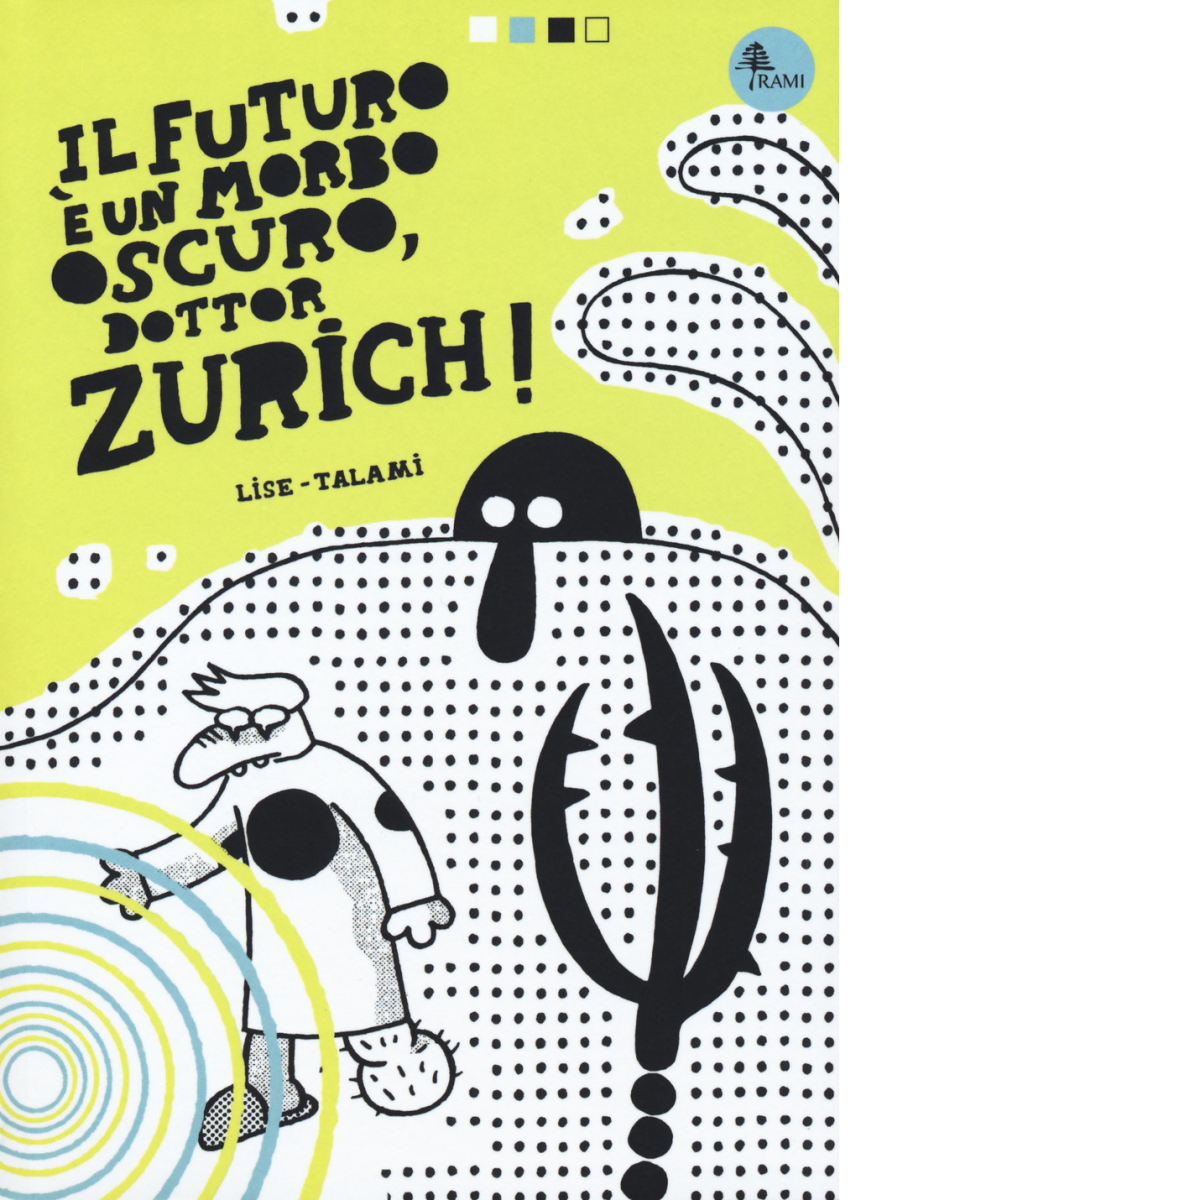 Il futuro ? un morbo oscuro, dottor Zurich! di Alessandro Lise, Alberto Talami, 